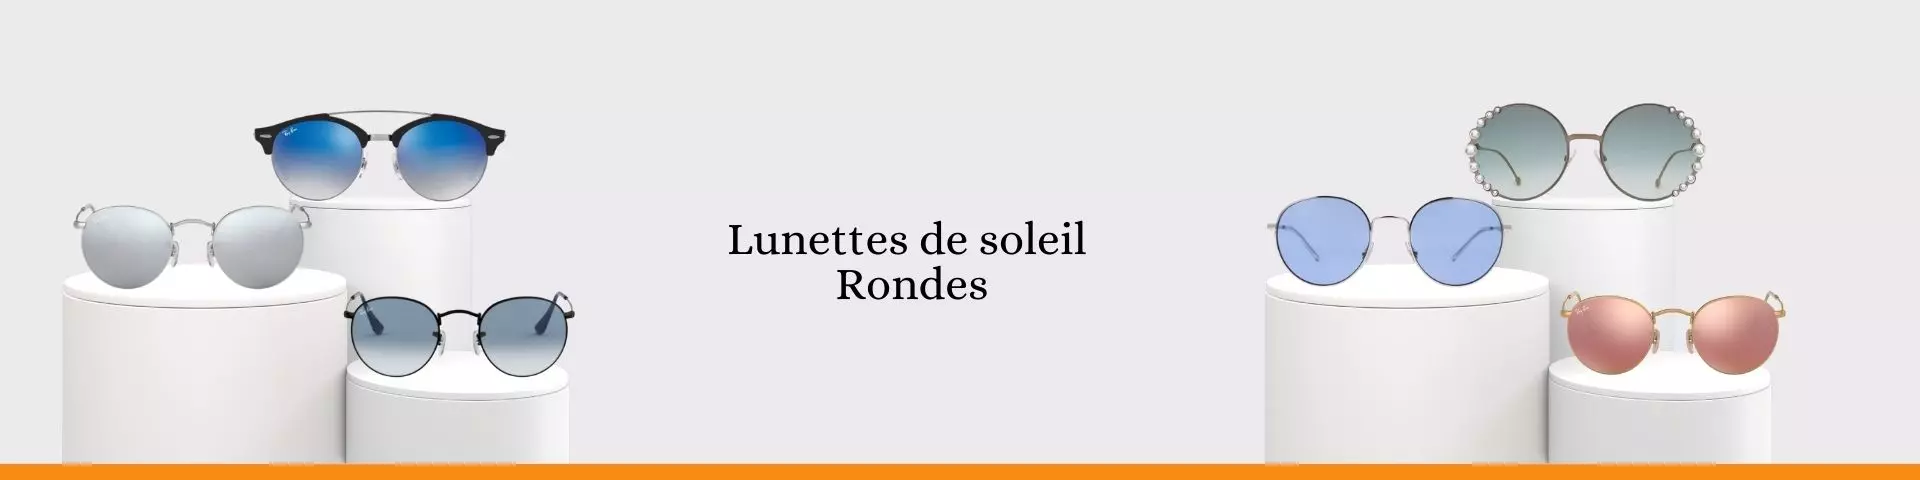 Lunettes de soleil Rondes Femme Lunette de soleil Homme prix Lunette de soleil Tunisie